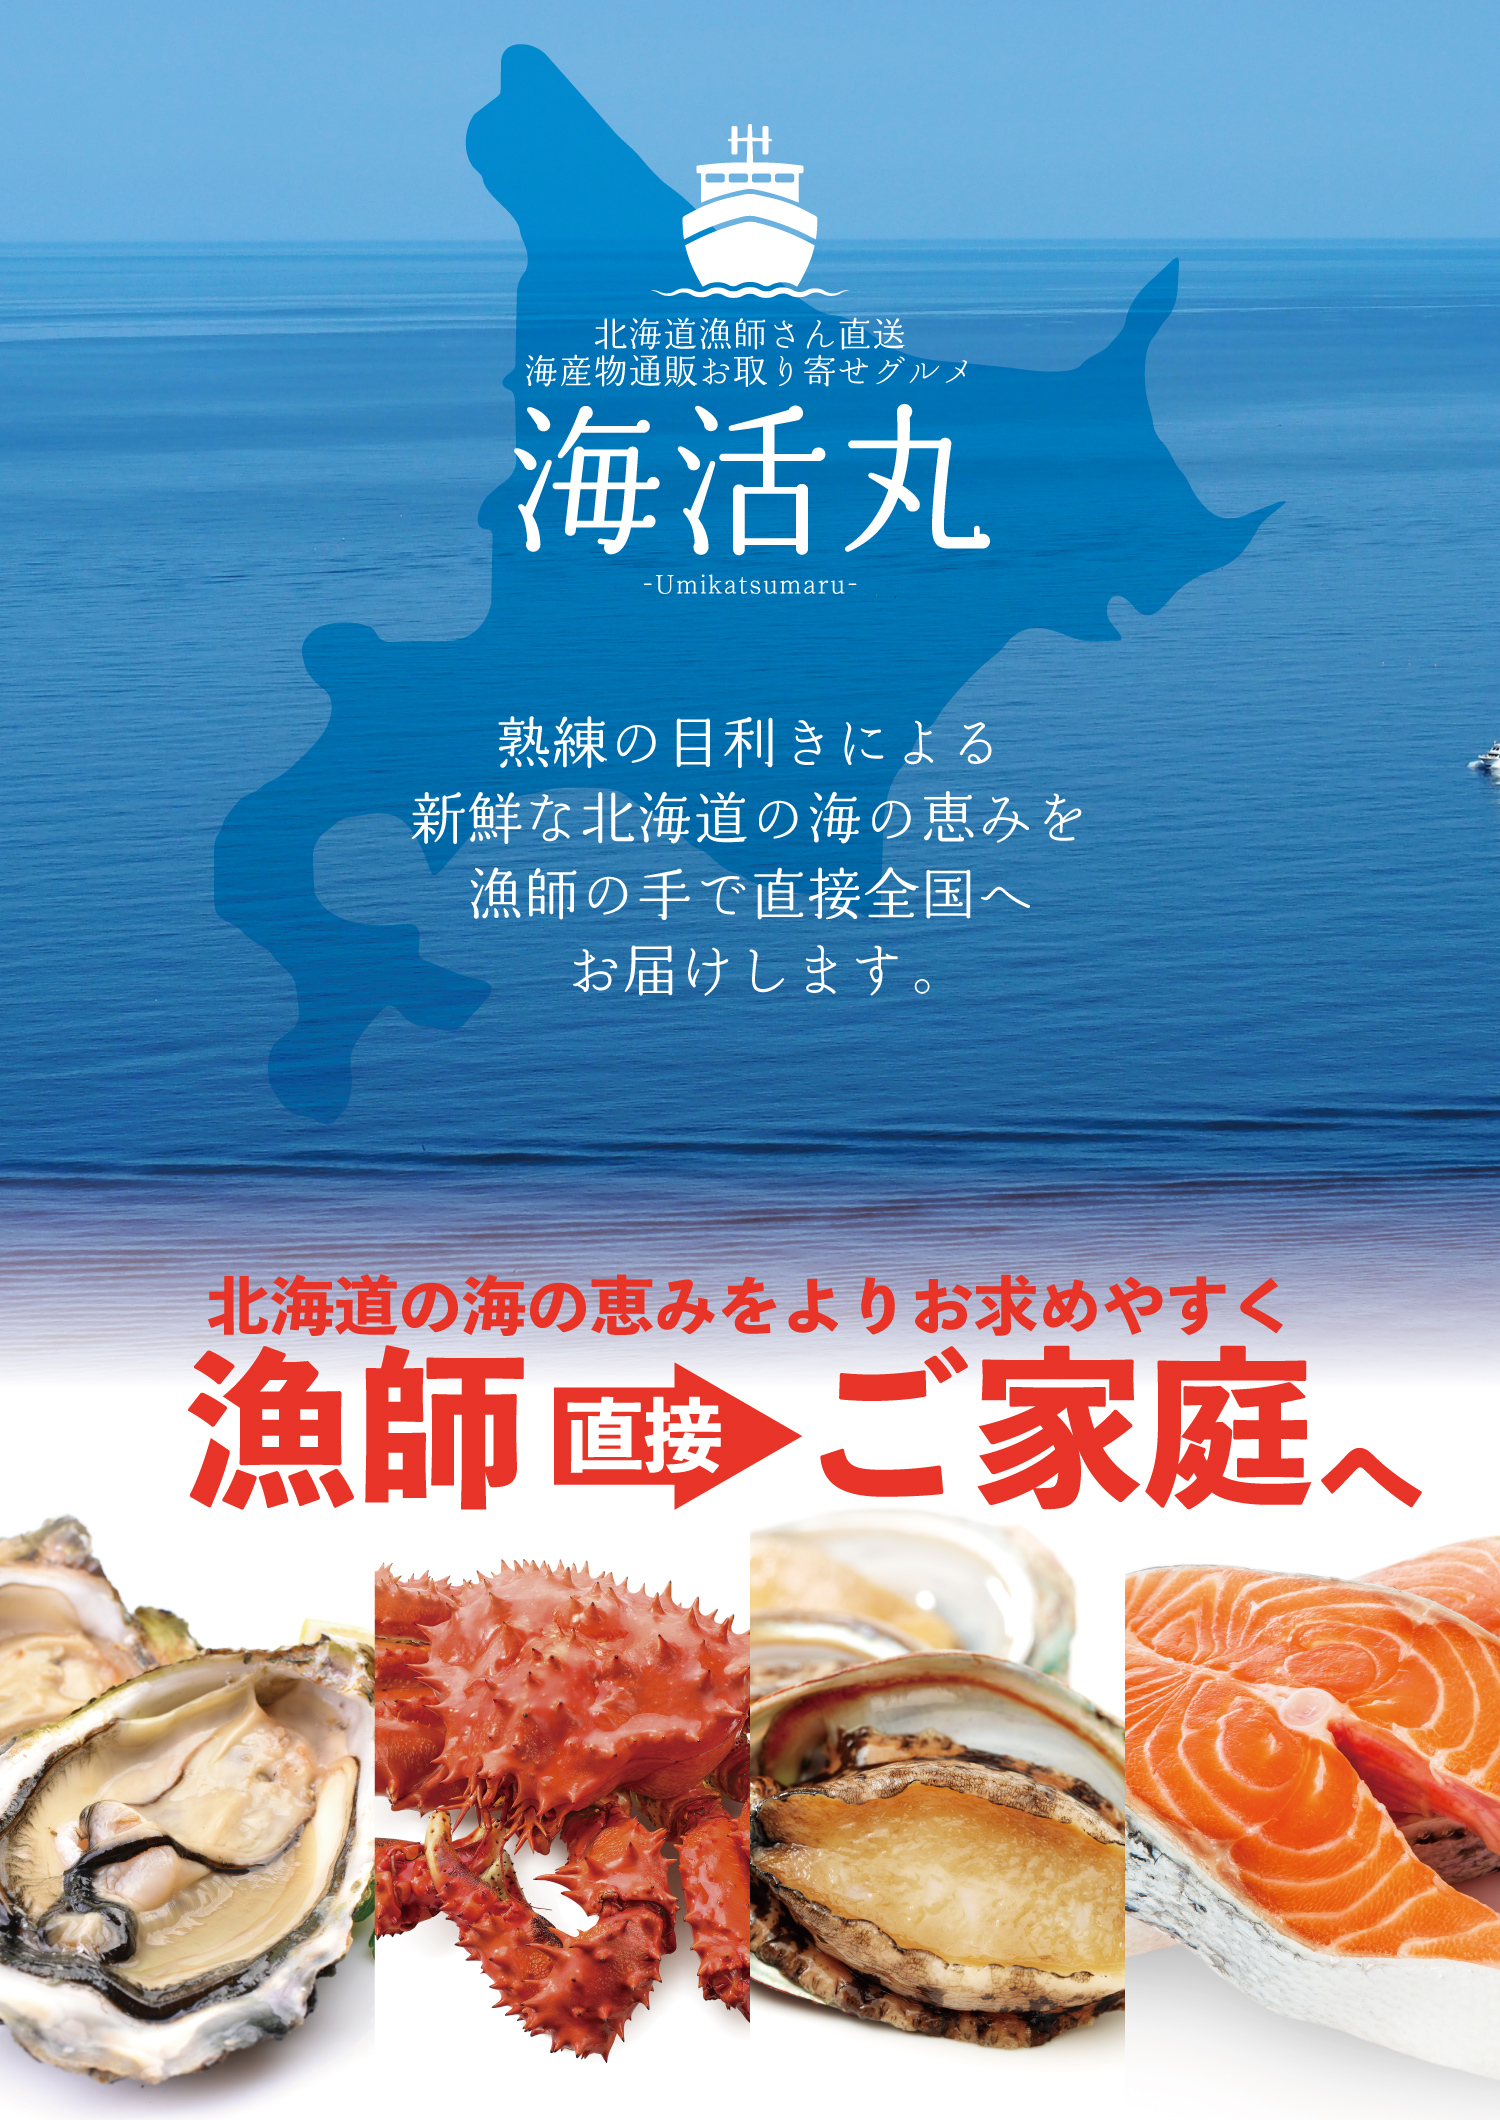 北海道の海産物通販サイト 海活丸 が12月1日より新規オープン 株式会社レガリアのプレスリリース